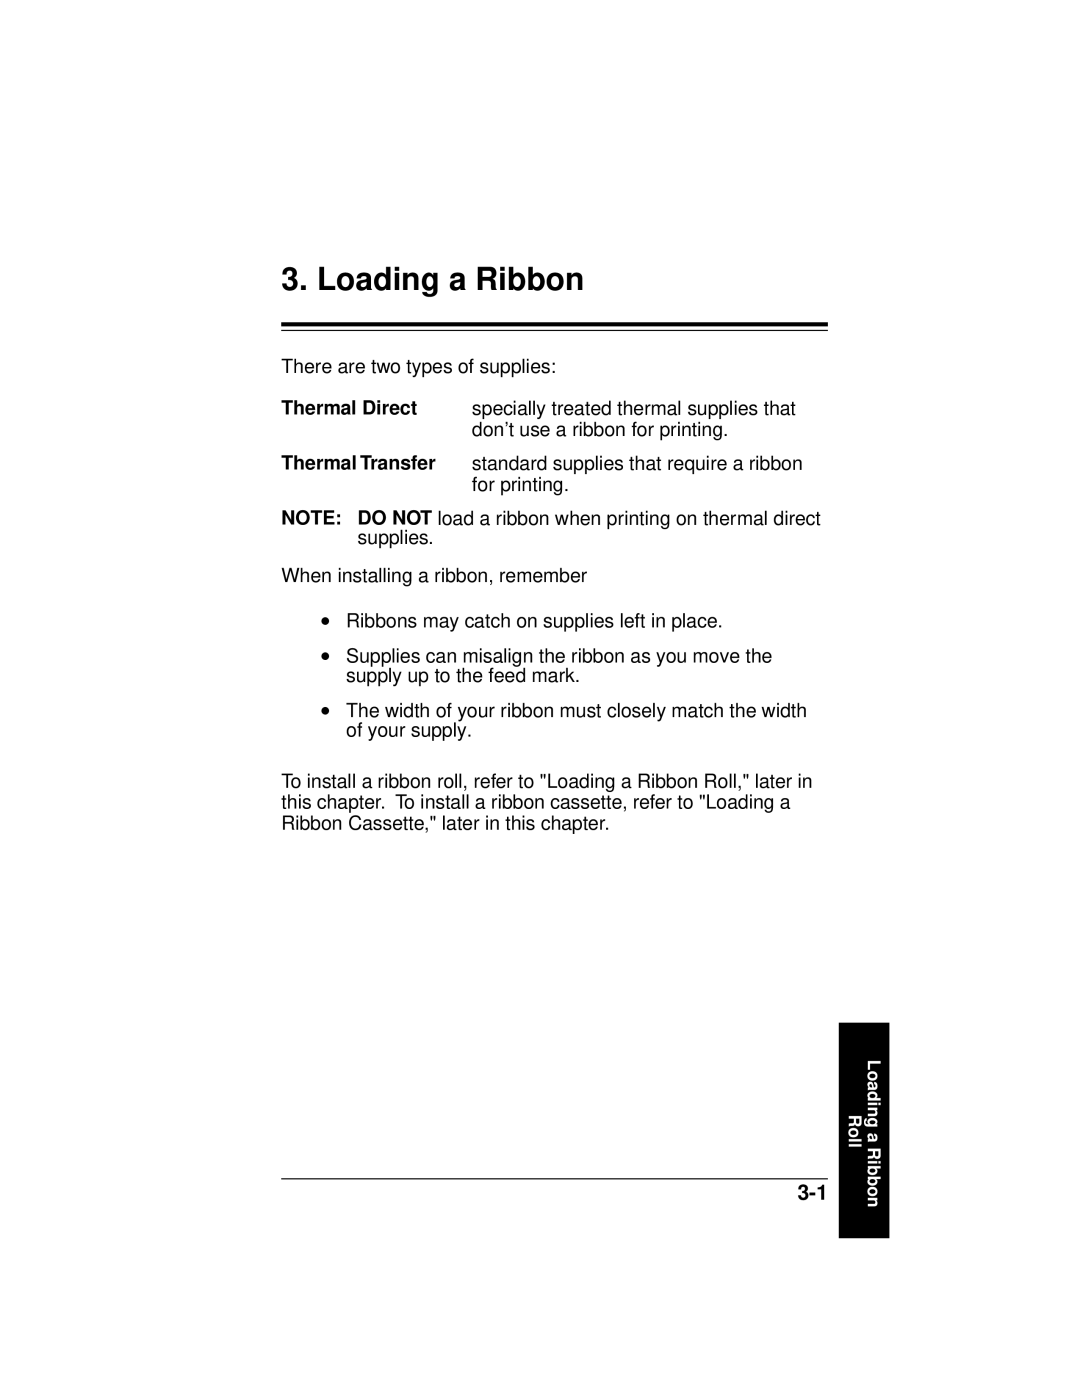 Paxar 9445 manual Loading a Ribbon 